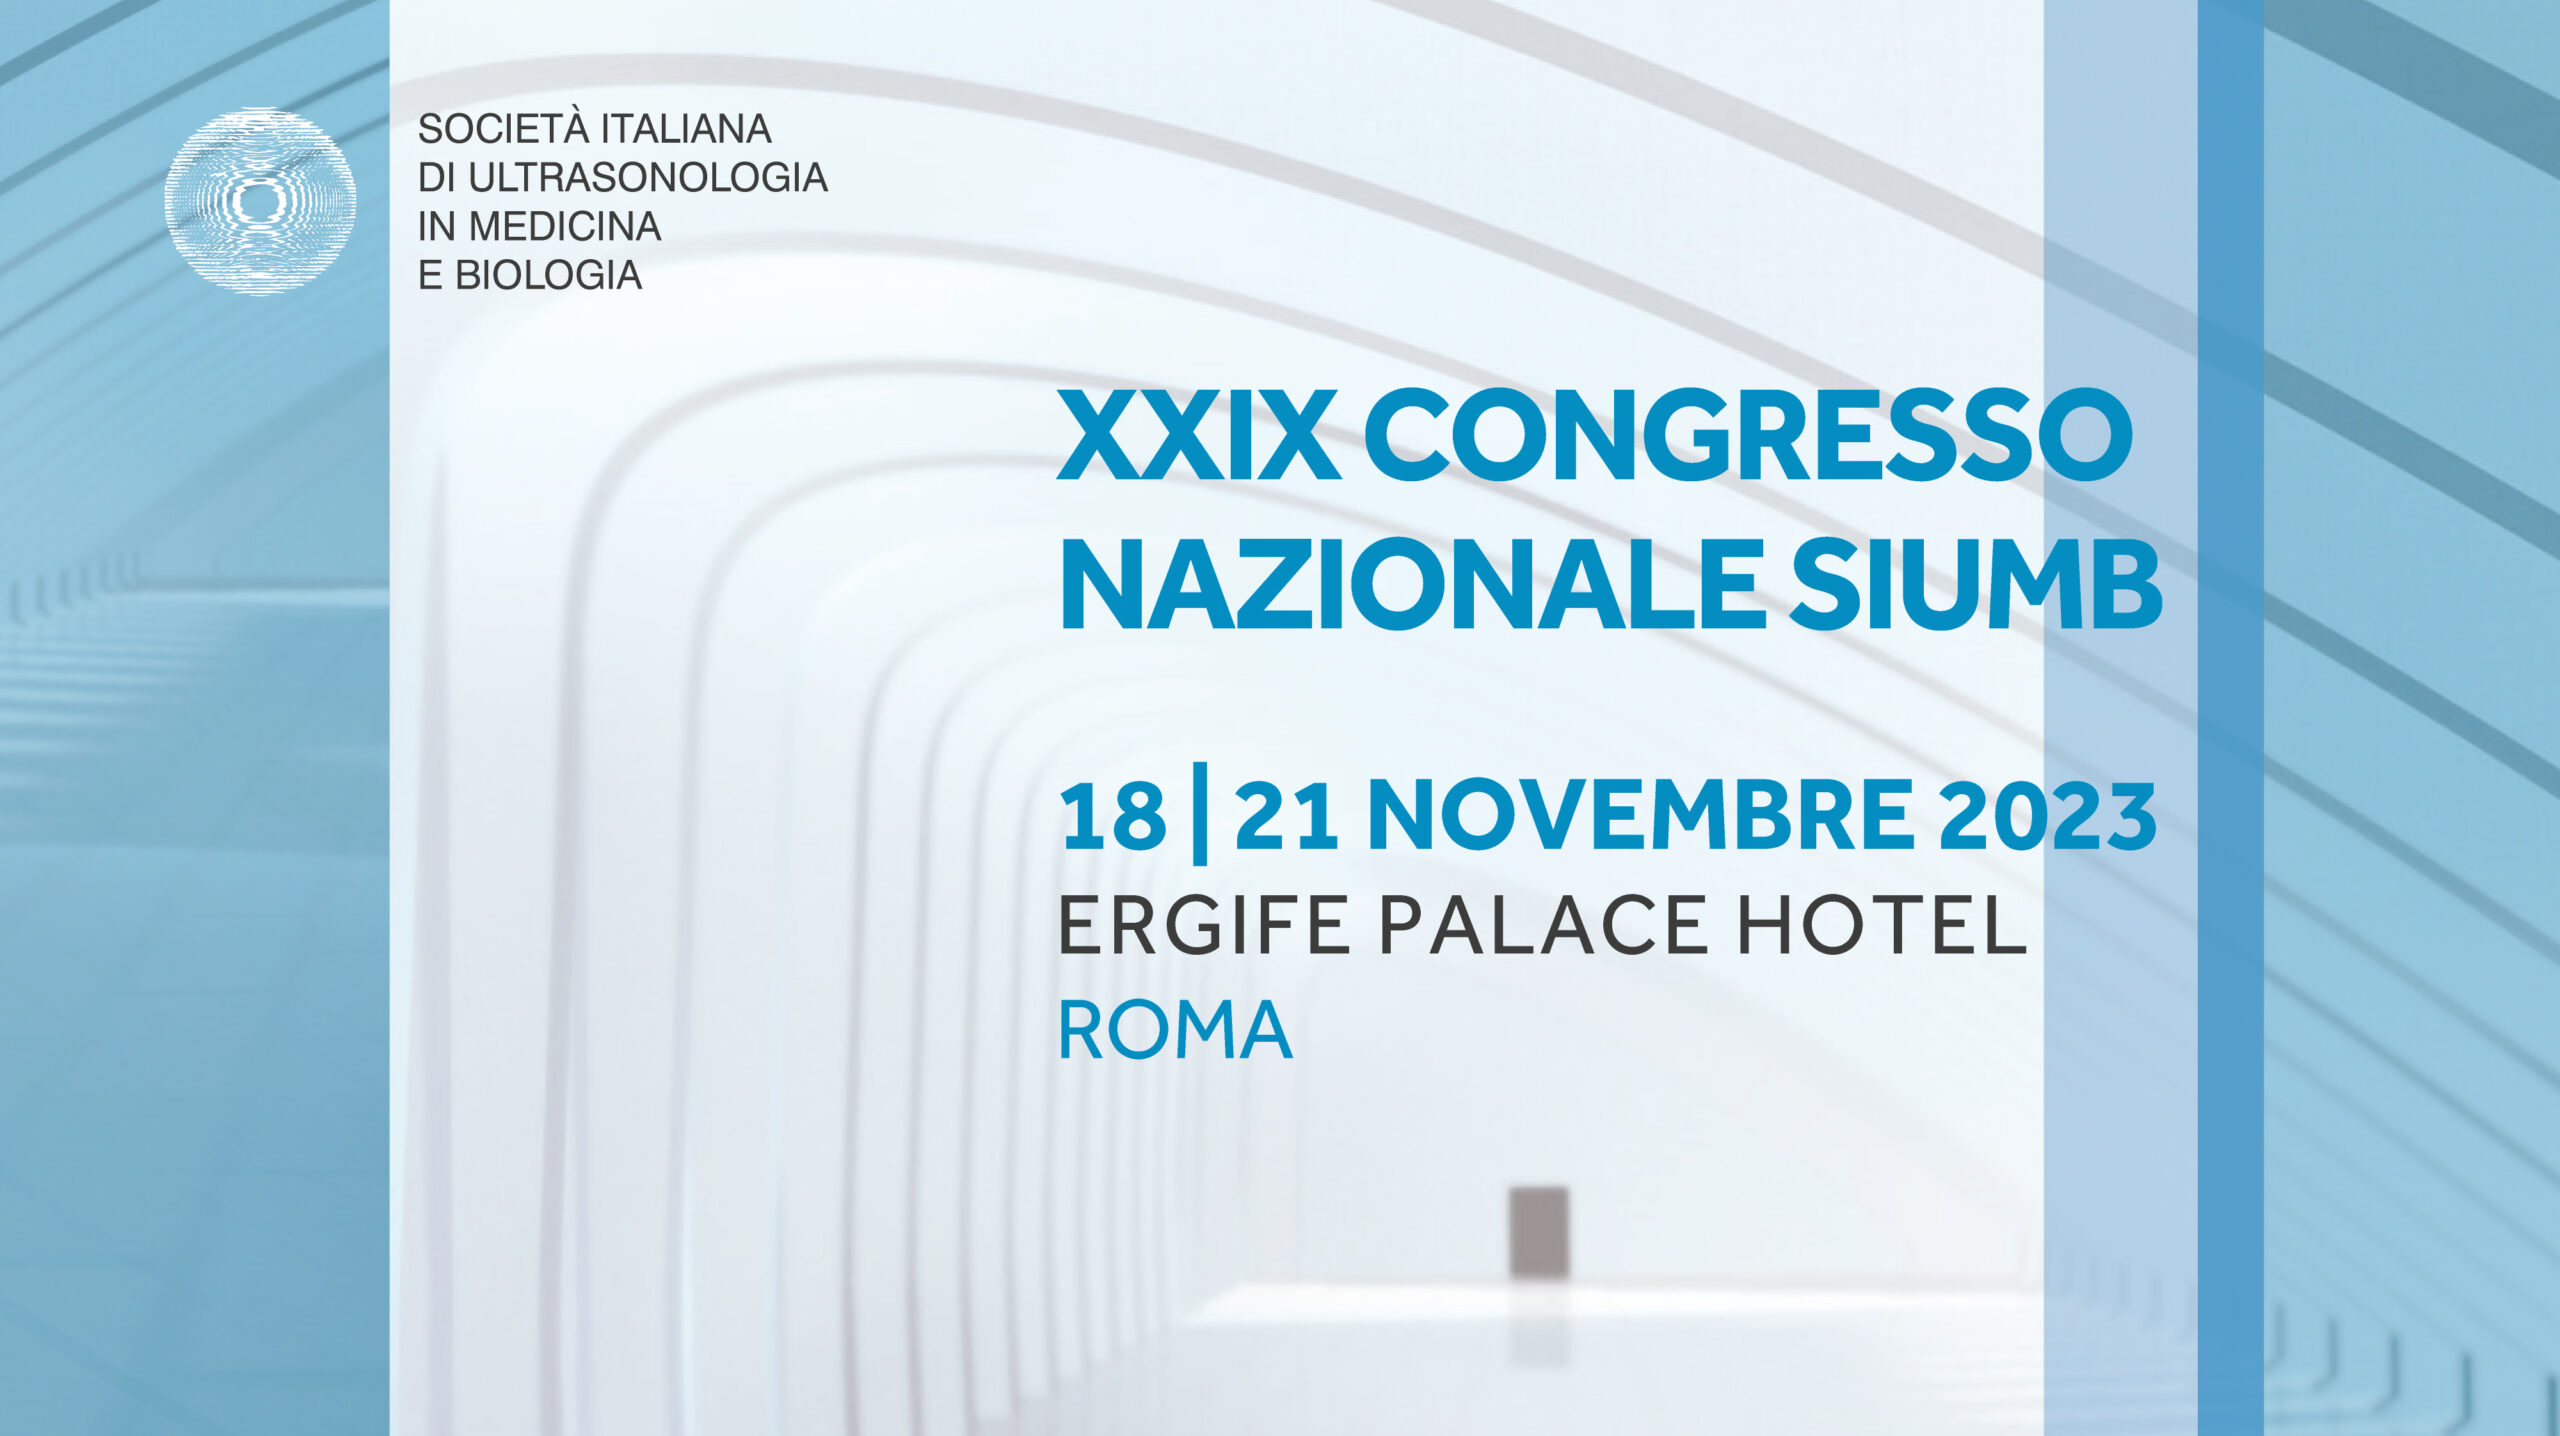 XXIX CONGRESSO NAZIONALE SIUMB – ROMA 18-21 NOVEMBRE 2023